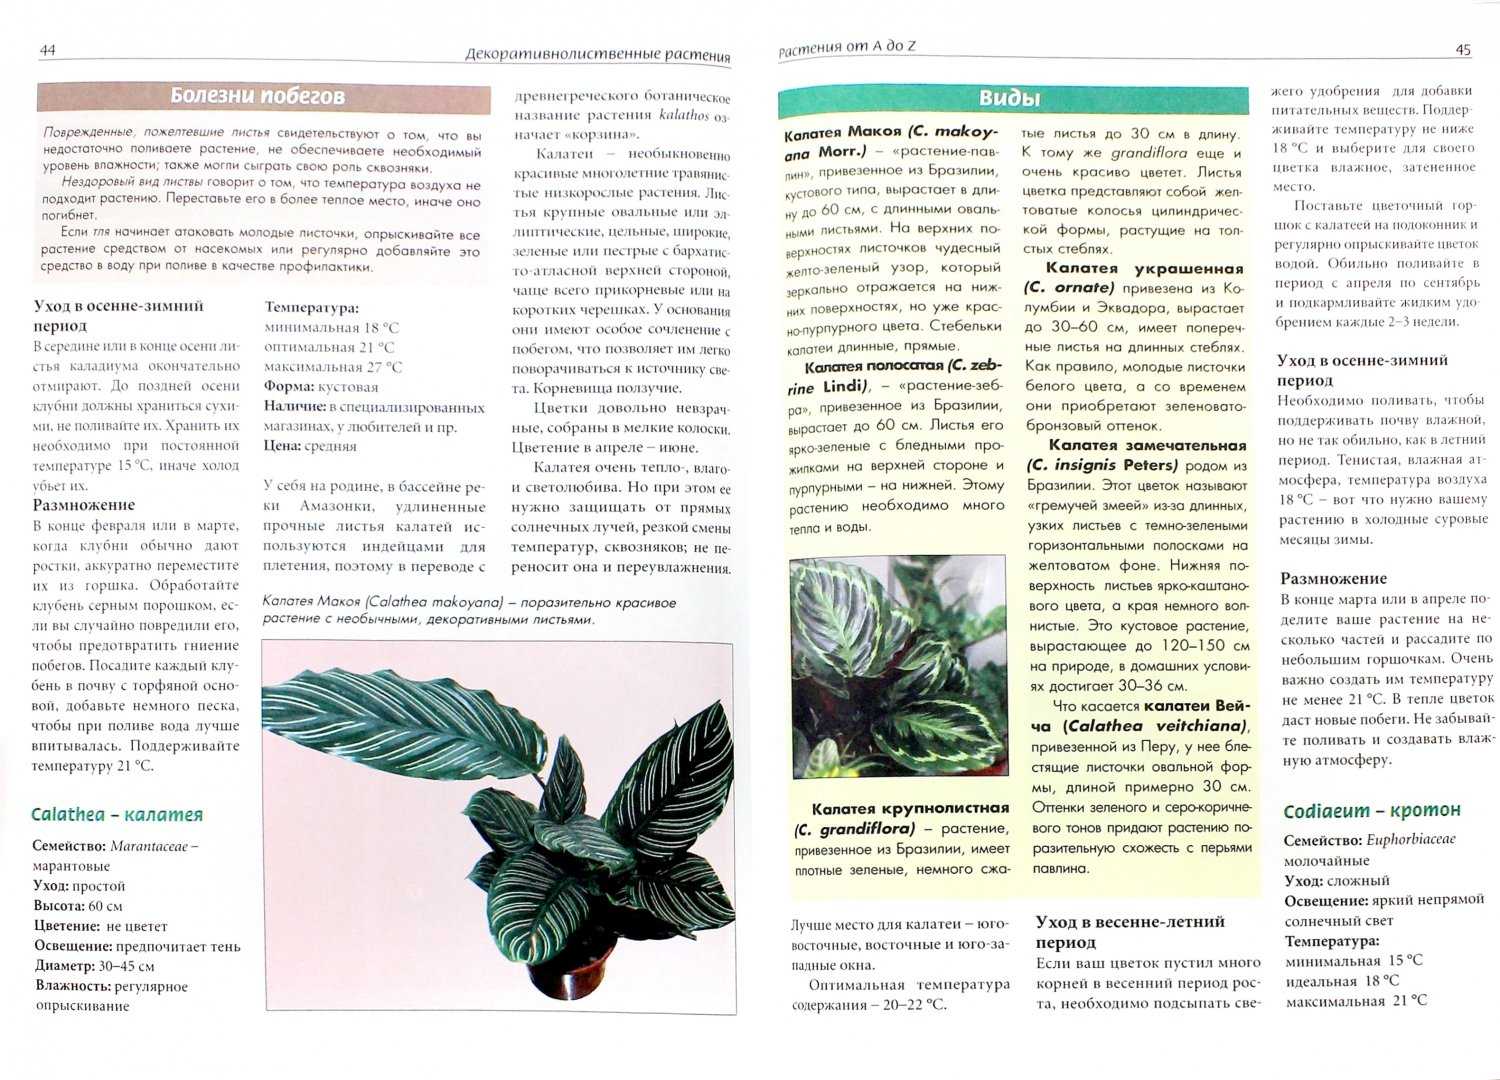 Калатея (calathea). описание, виды и уход за калатеей | флористика на "добро есть!"